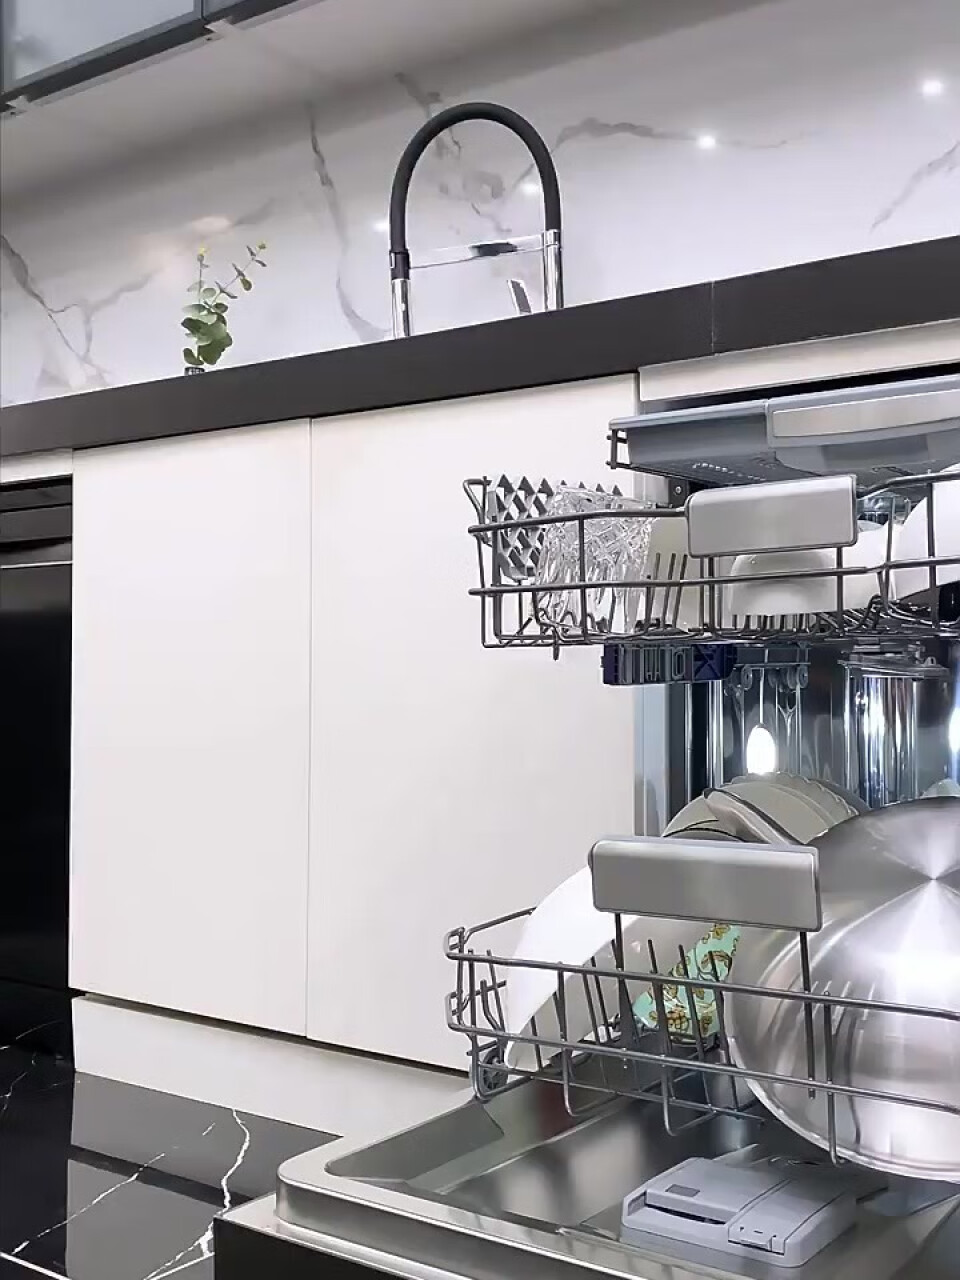 意大利daogrs W6原装进口洗碗机全自动家用智能15套嵌入式 黑色,第2张